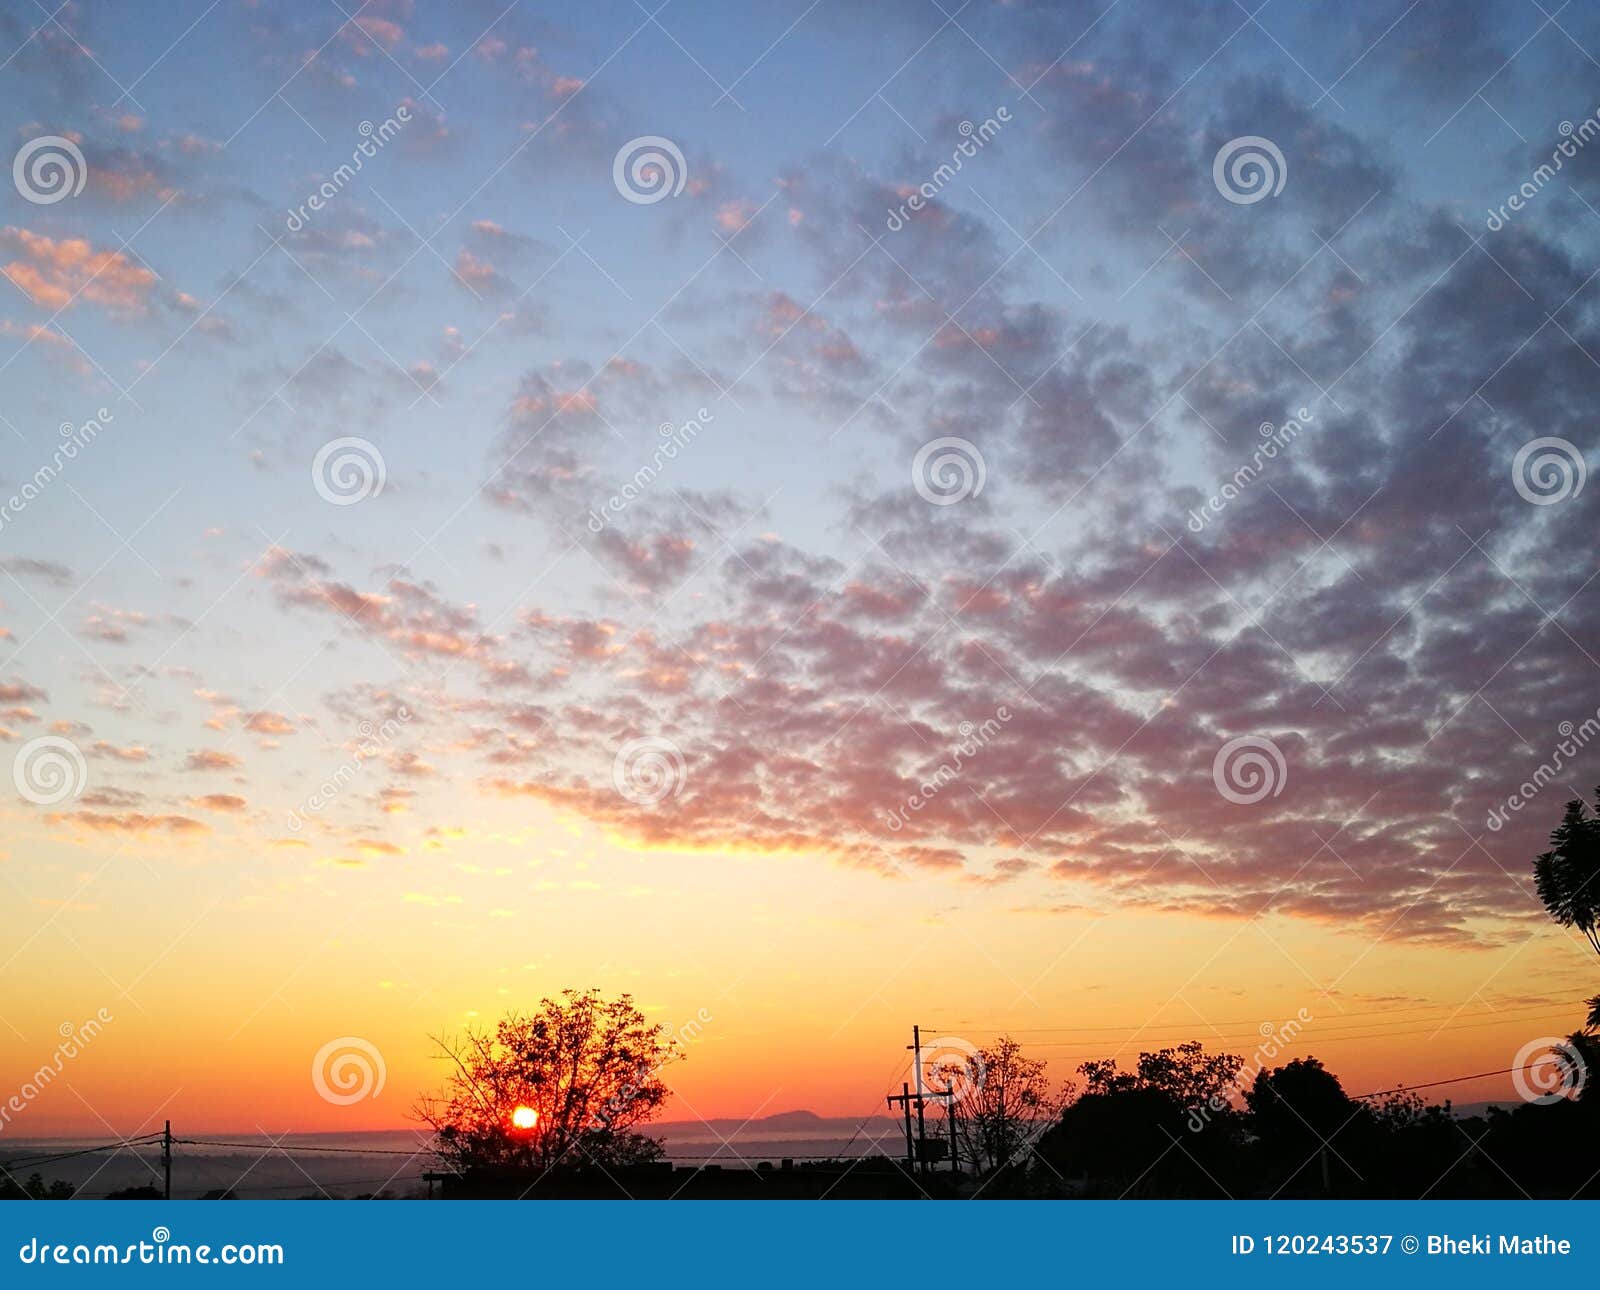 Early Morning Sunrise Art with a Beautiful Orange Sky Stock Image - Image  of horizon, sets: 120243537